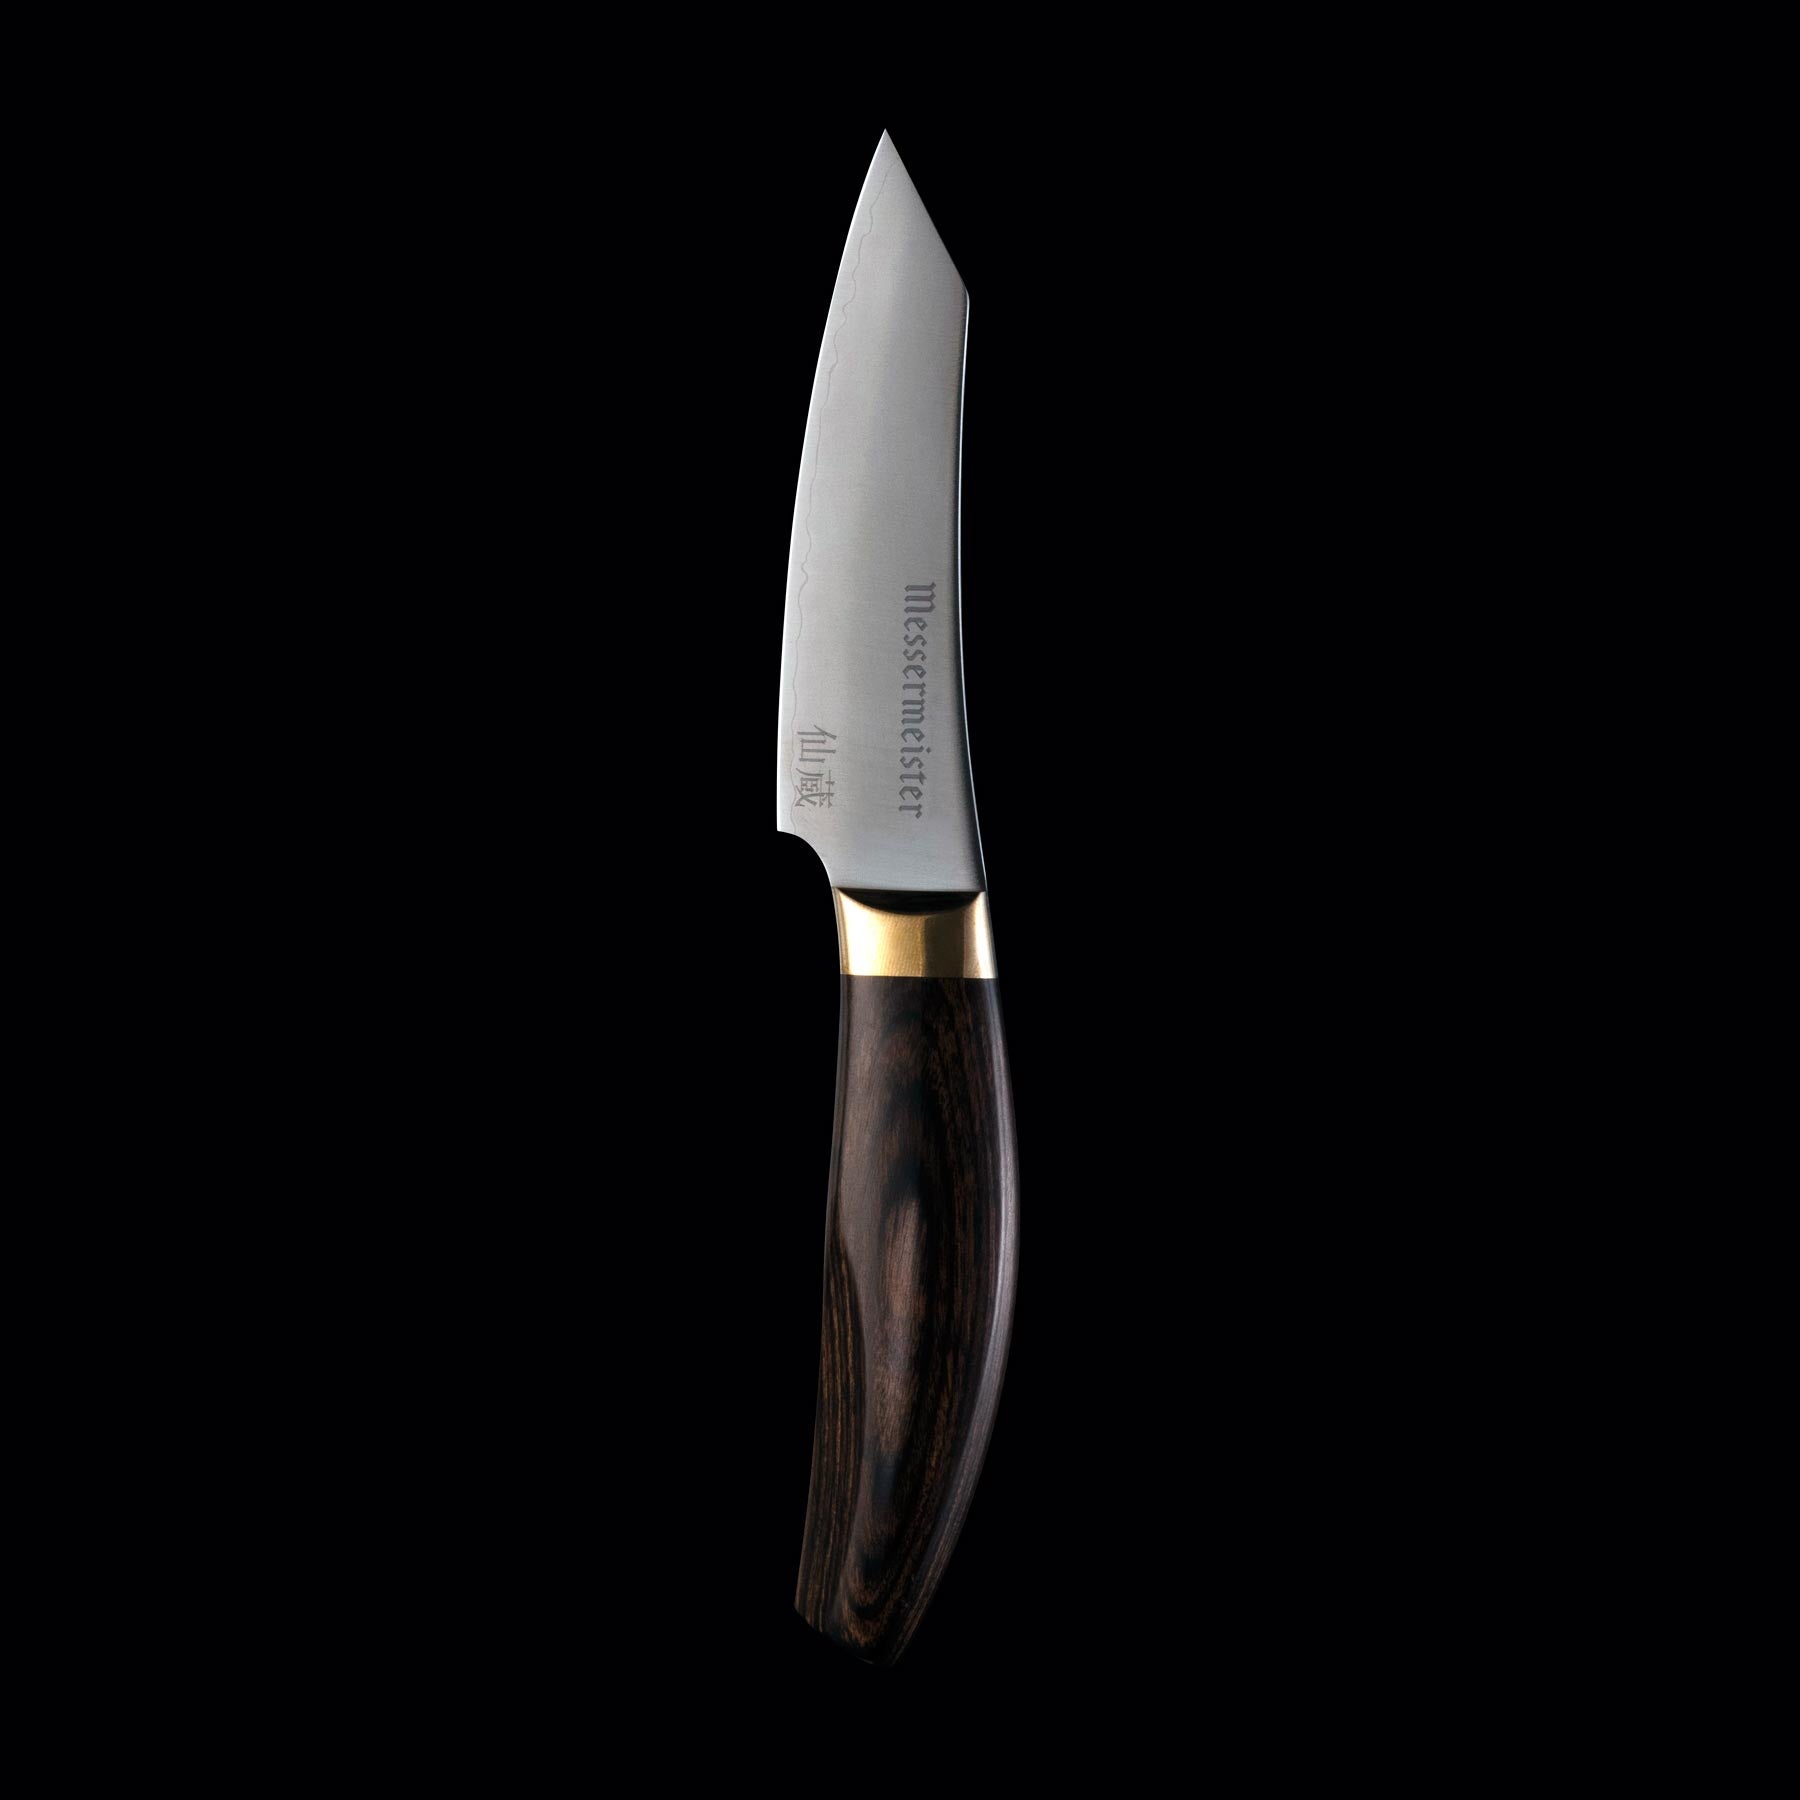 Kawashima Paring Knife - 3.75"